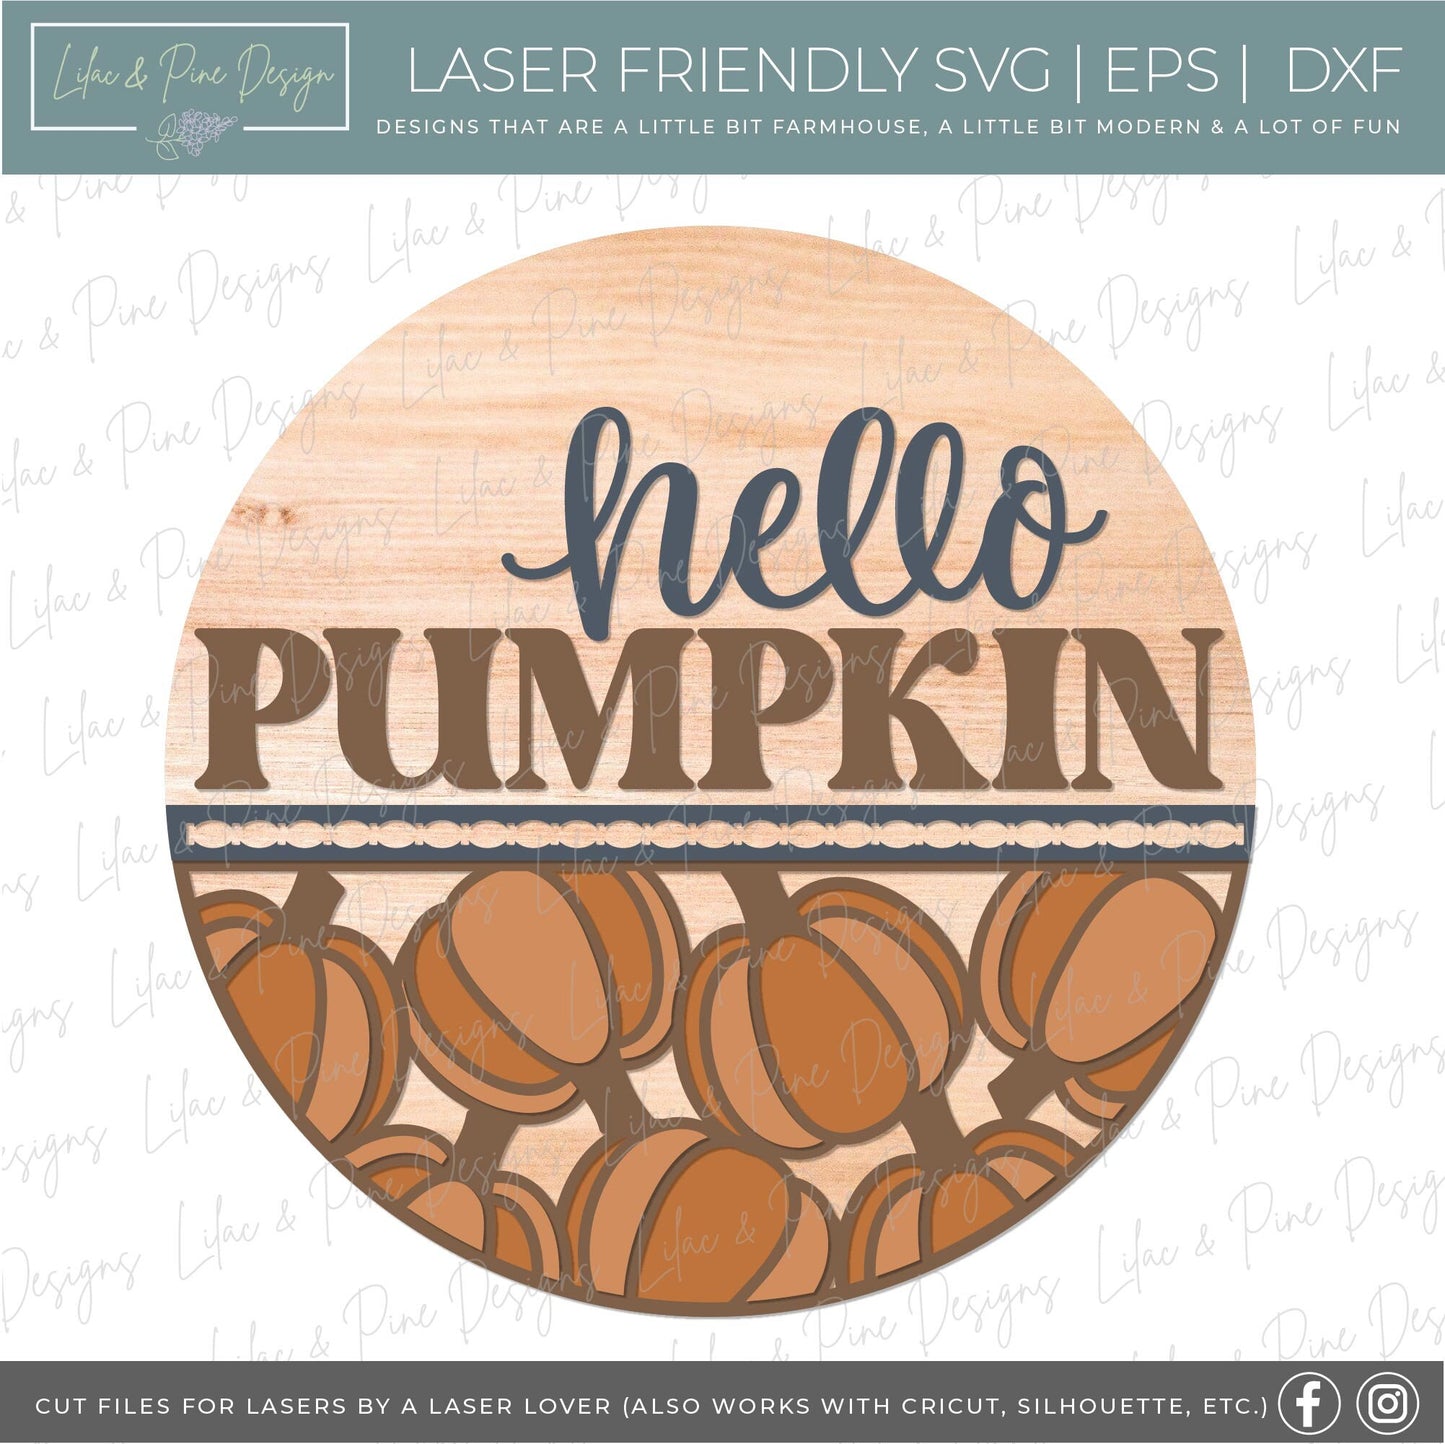 Pumpkin door hanger SVG, Fall door hanger, Help Pumpkin sign, Pumpkin welcome sign SVG, fall decor, Glowforge laser SVG, laser cut file